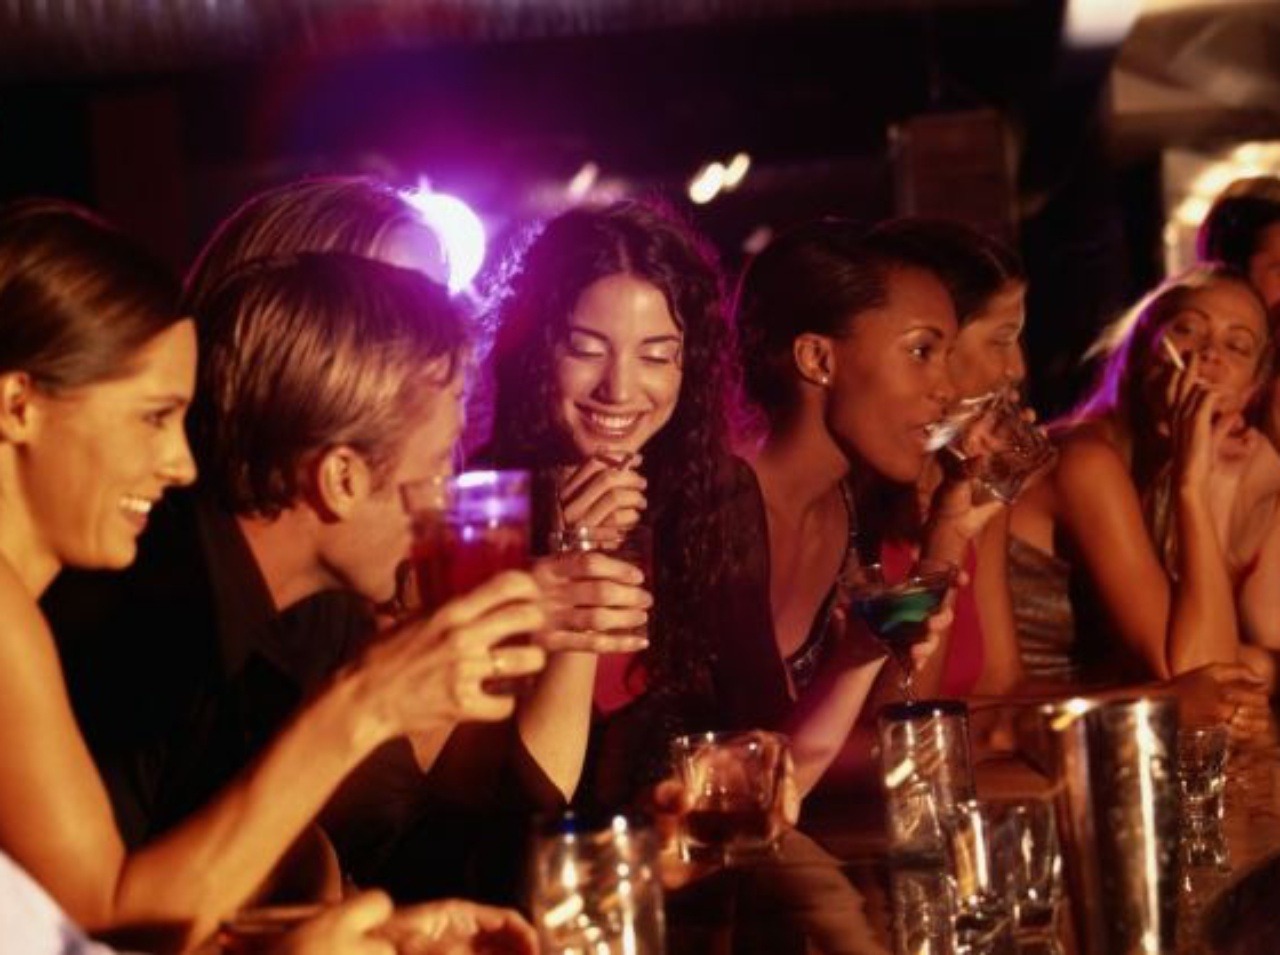 Počas popíjania alkoholu môžete vyriešiť niektoré problémy ľahšie, ako keby ste boli triezvi.